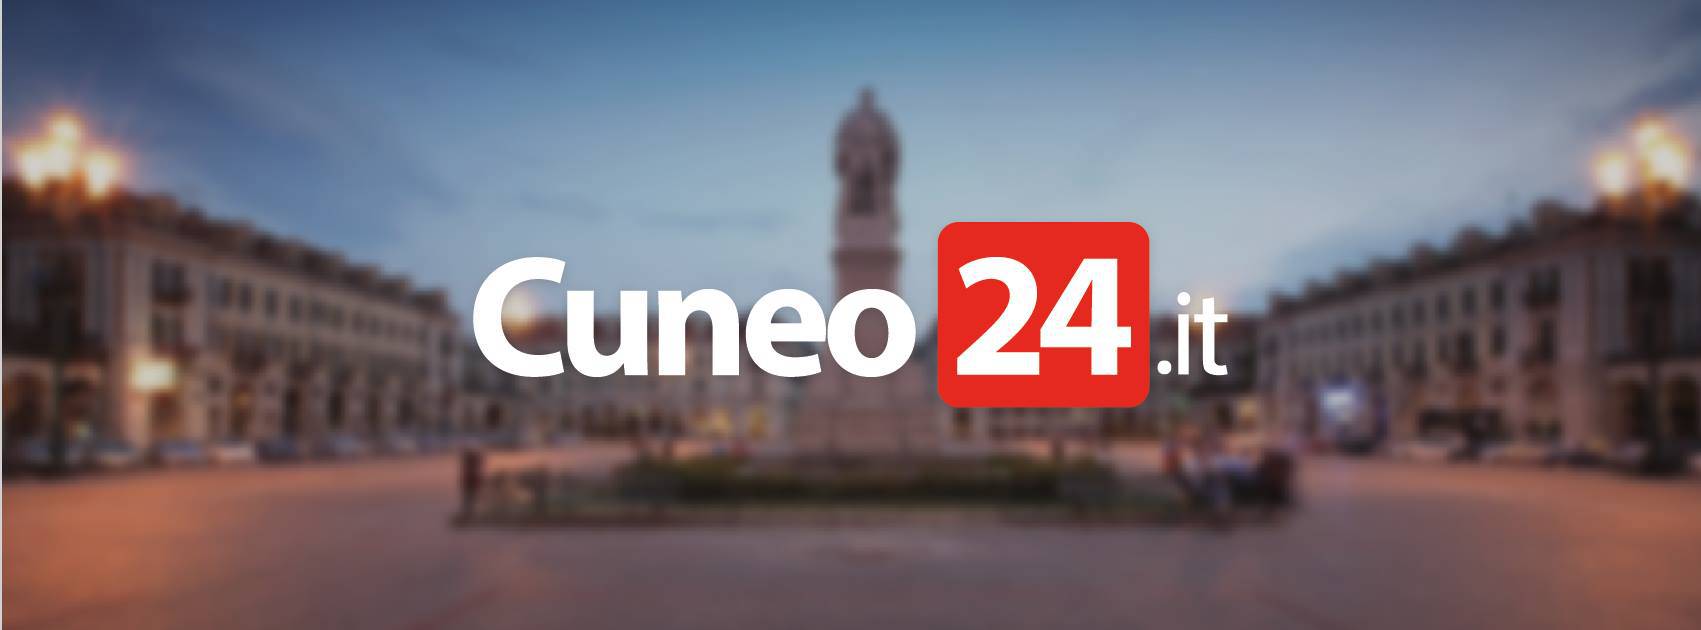 La top ten degli articoli più letti del 2022 su Cuneo24.it